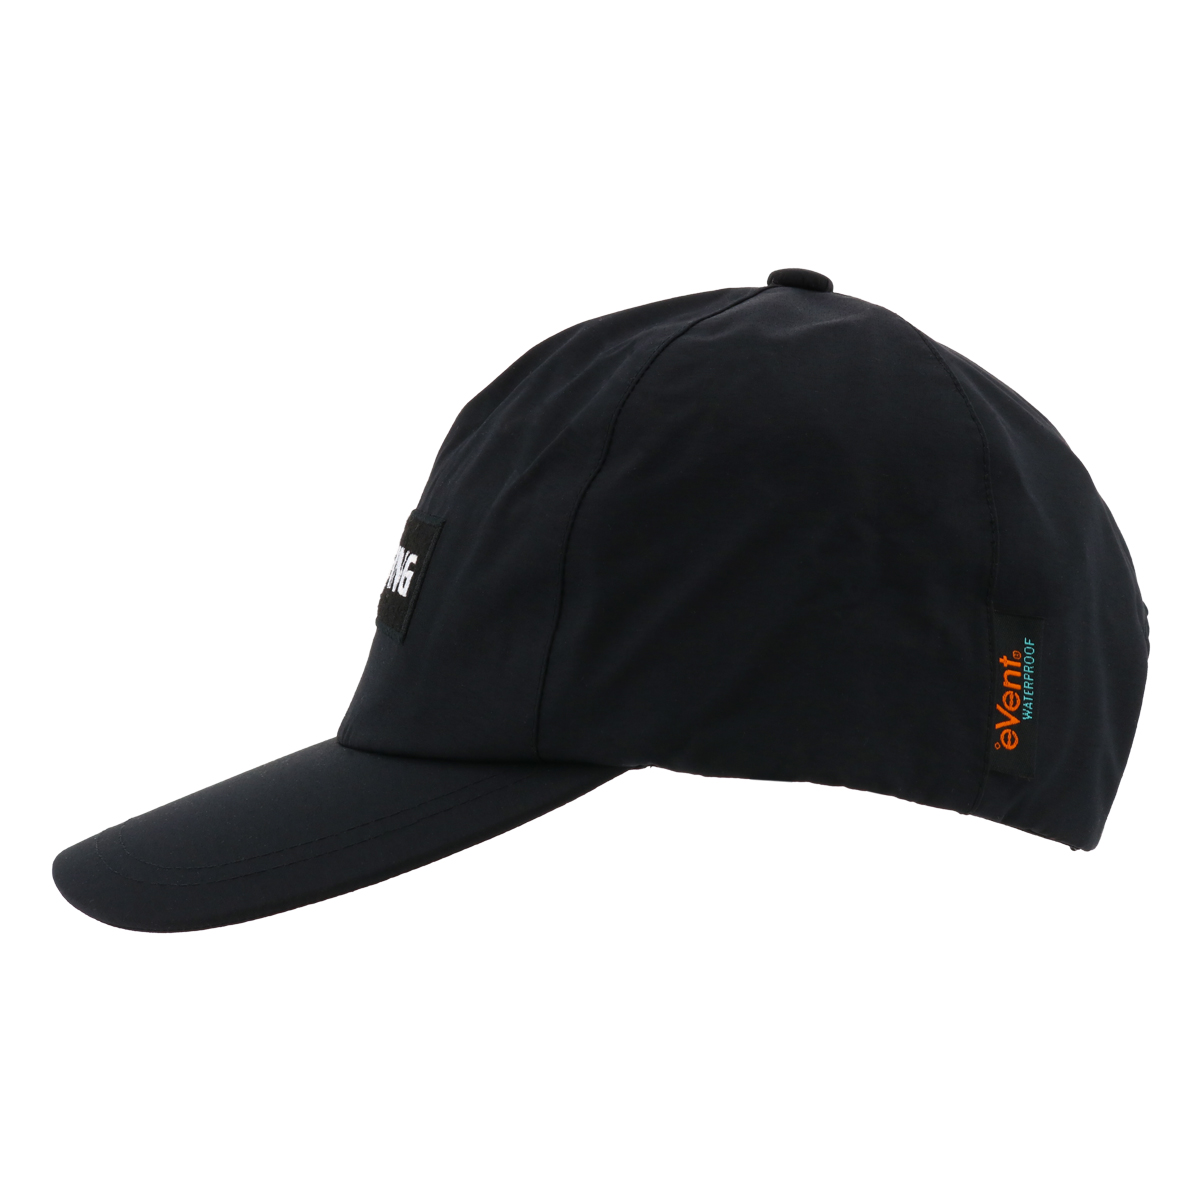 正規品 ブリーフィング ゴルフ キャップ 帽子 撥水 メンズ BRG211M66 BRIEFING 帽子 MENS EVENT BASIC RAIN  CAP レインキャップ _sale